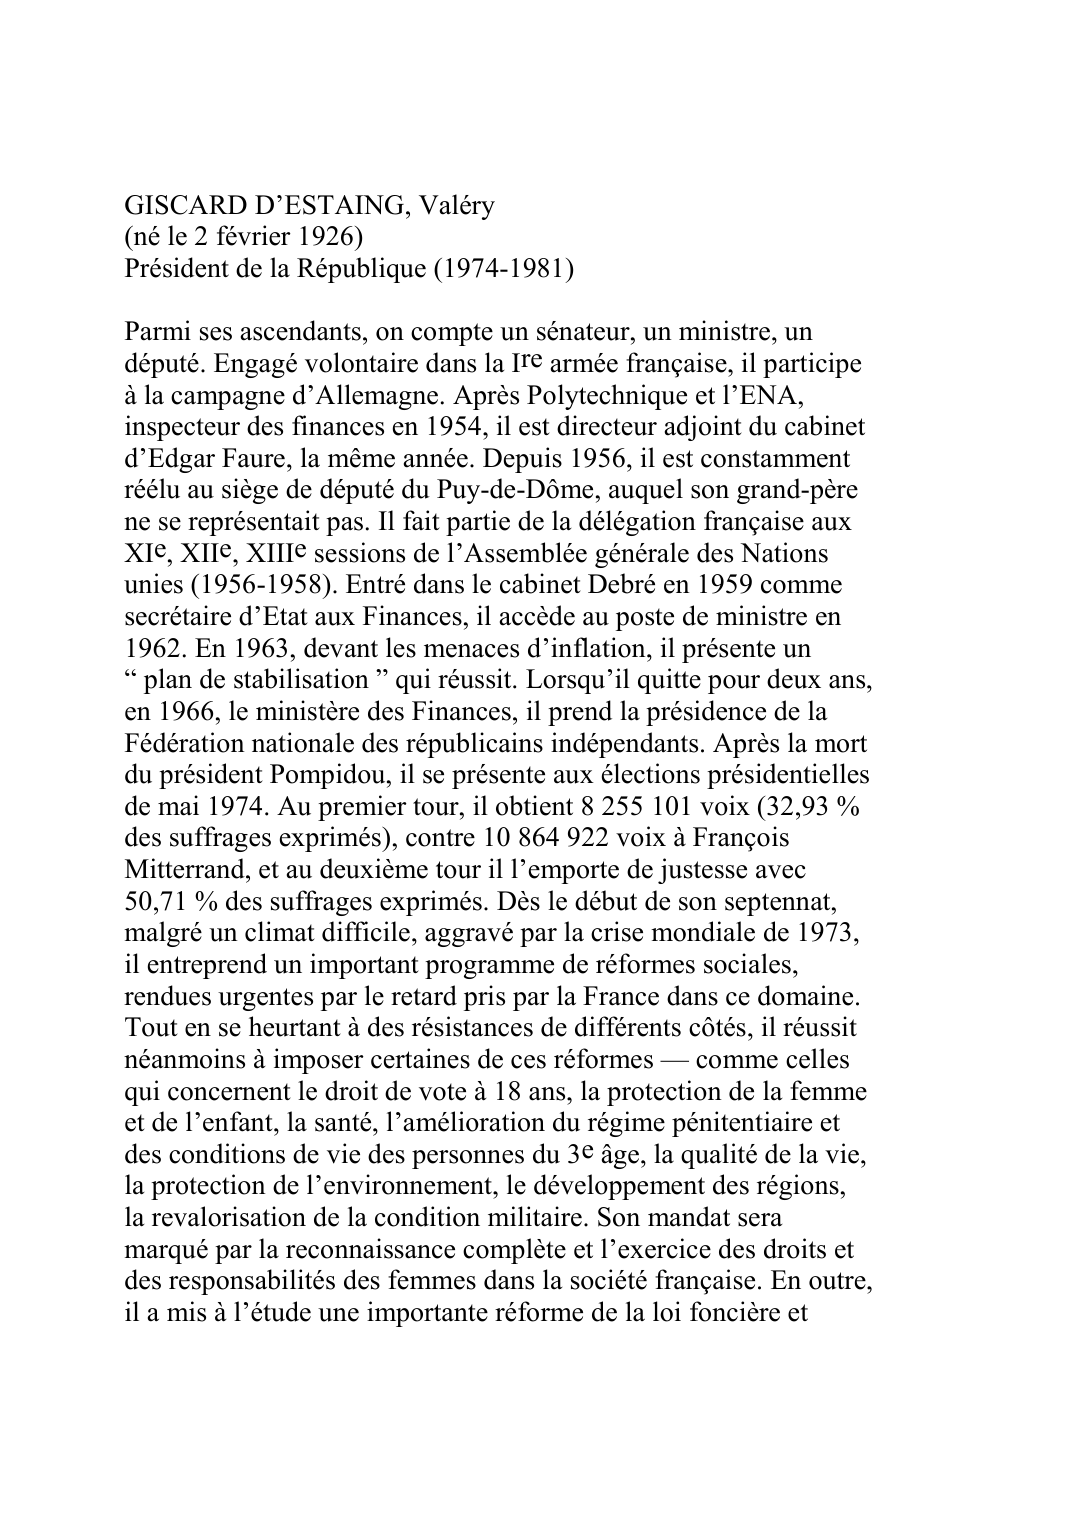 Prévisualisation du document GISCARD D'ESTAING, Valéry(né le 2 février 1926)Président de la République (1974-1981)Parmi ses ascendants, on compte un sénateur, un ministre, undéputé.